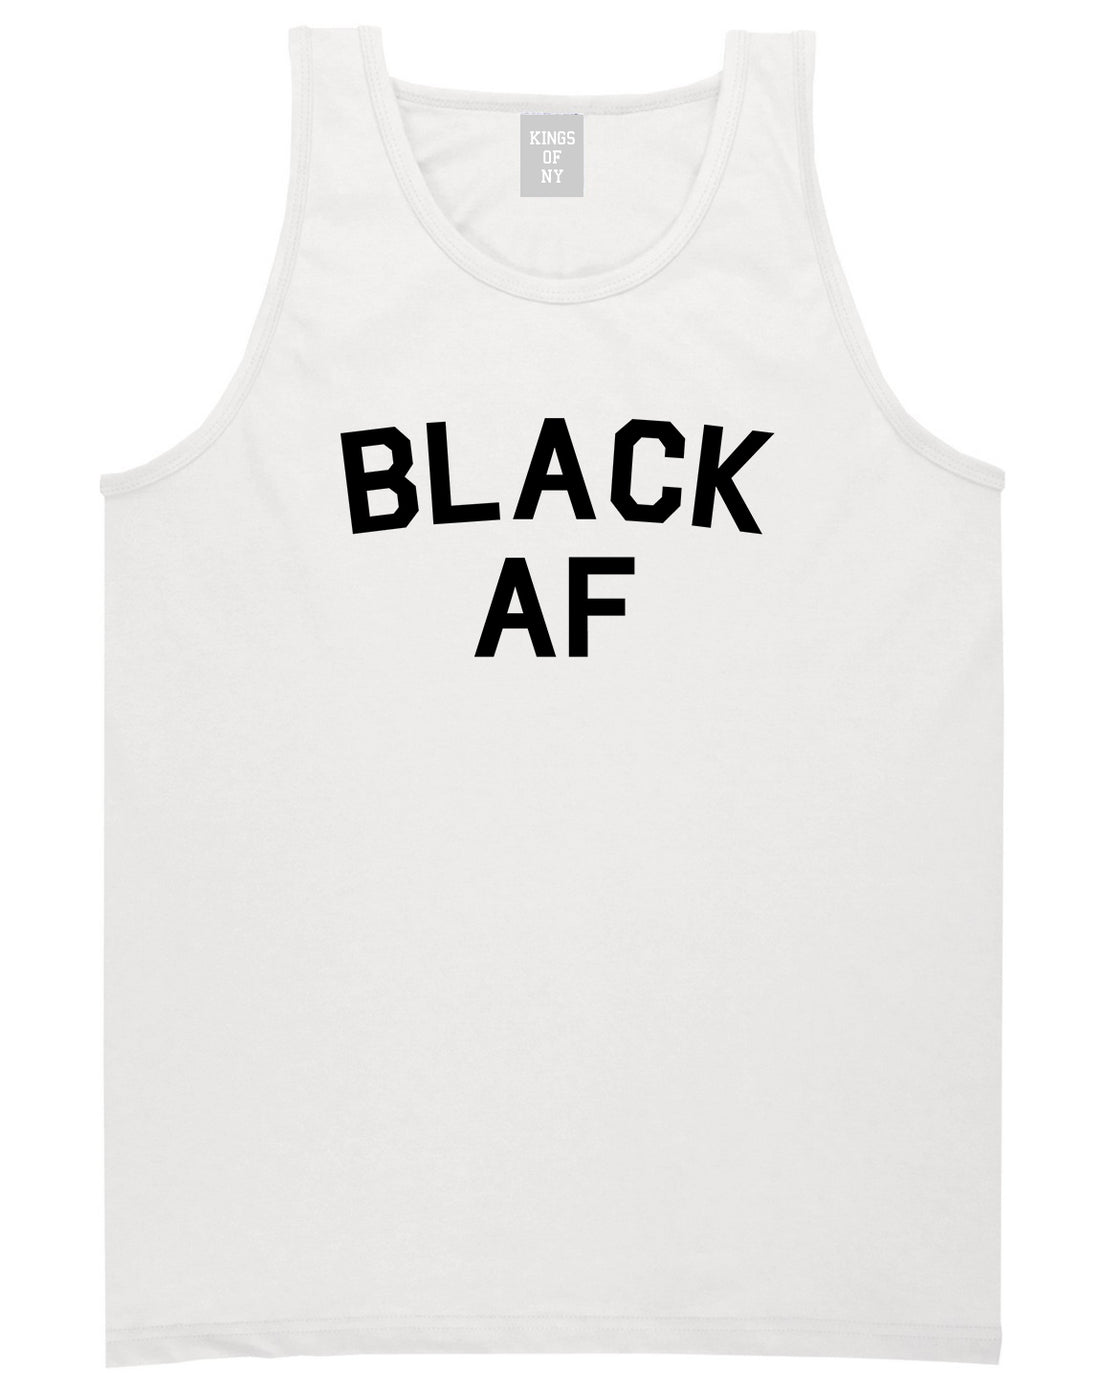 Black AF Mens Tank Top Shirt White